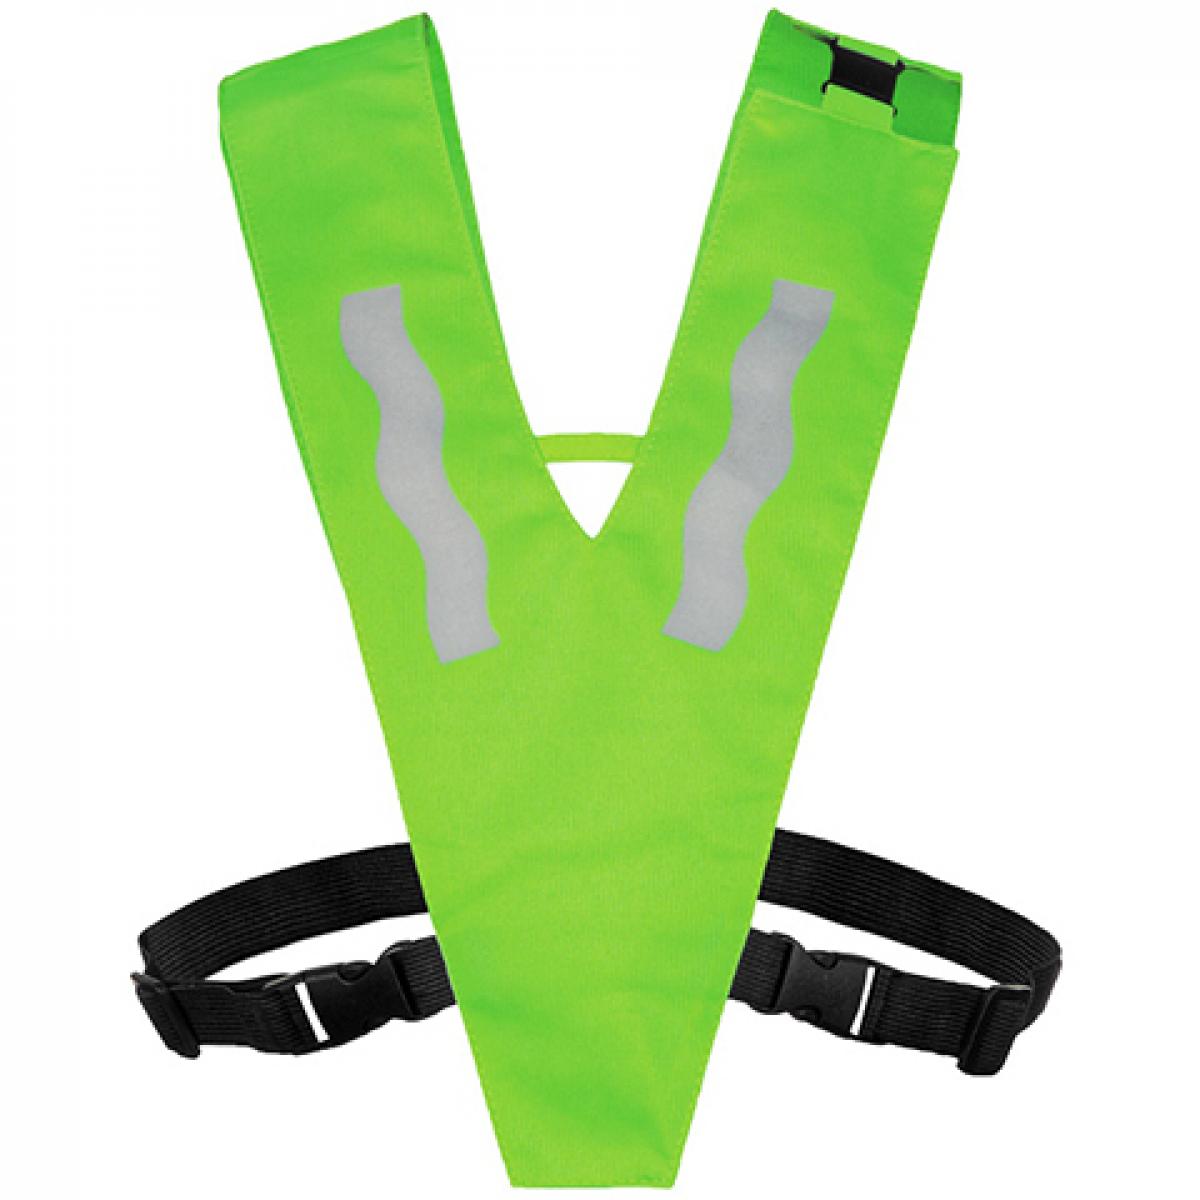 Hersteller: Korntex Herstellernummer: KT100S/XS Artikelbezeichnung: Kinder Safety Collar with Safety Clasp for Kids Farbe: Neon Green